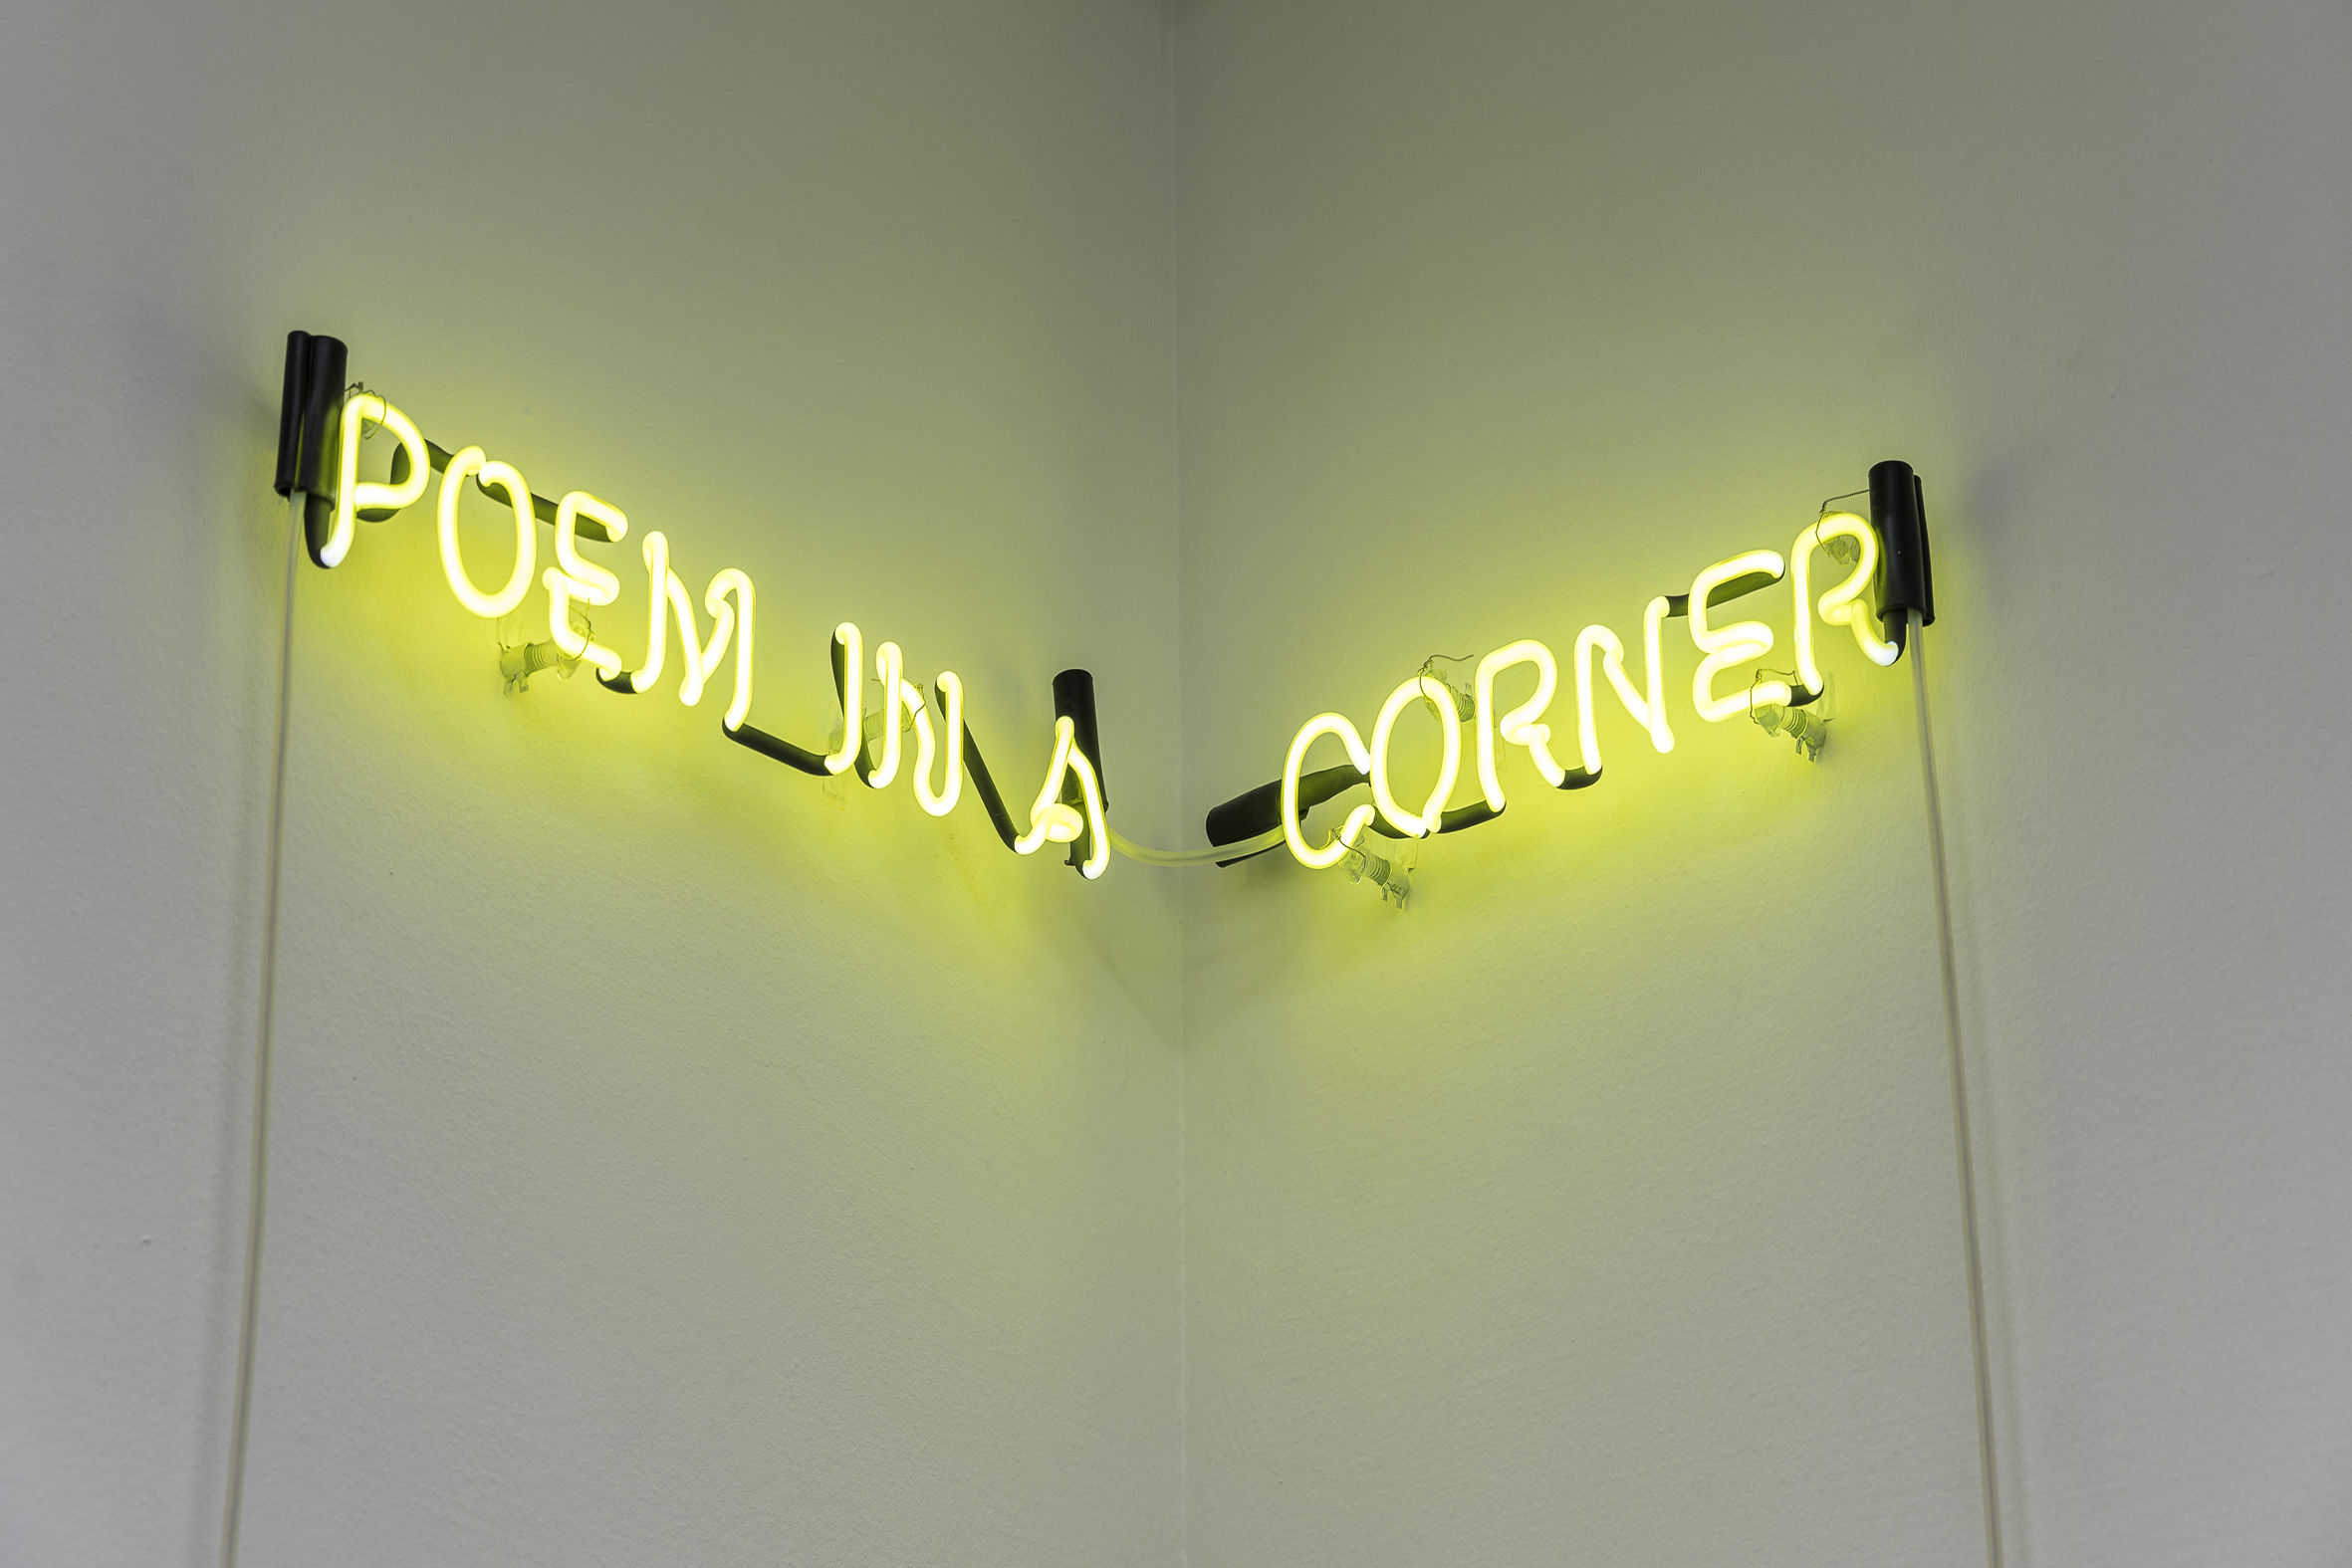   Poem in a Corner  , 2019  Neón / Neon  2 piezas de 46.5 x 6.5 cm y 34.5 x 6.5 cm / 2 pieces of 46.5 x 6.5 cm and 34.5 x 6.5 cm   